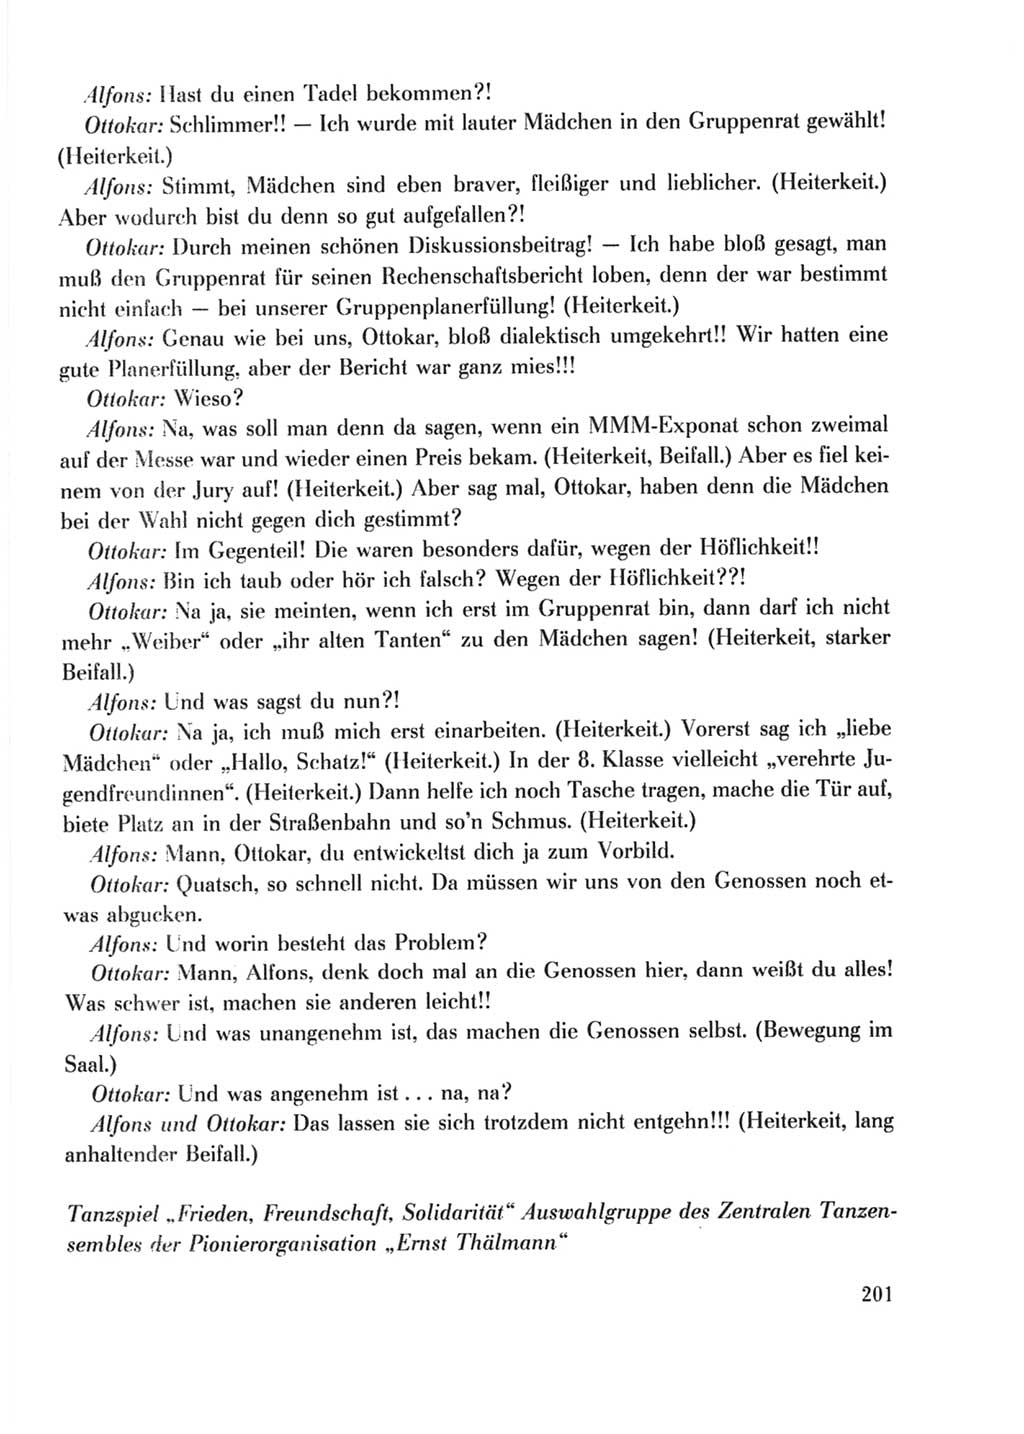 Protokoll der Verhandlungen des Ⅹ. Parteitages der Sozialistischen Einheitspartei Deutschlands (SED) [Deutsche Demokratische Republik (DDR)] 1981, Band 2, Seite 201 (Prot. Verh. Ⅹ. PT SED DDR 1981, Bd. 2, S. 201)